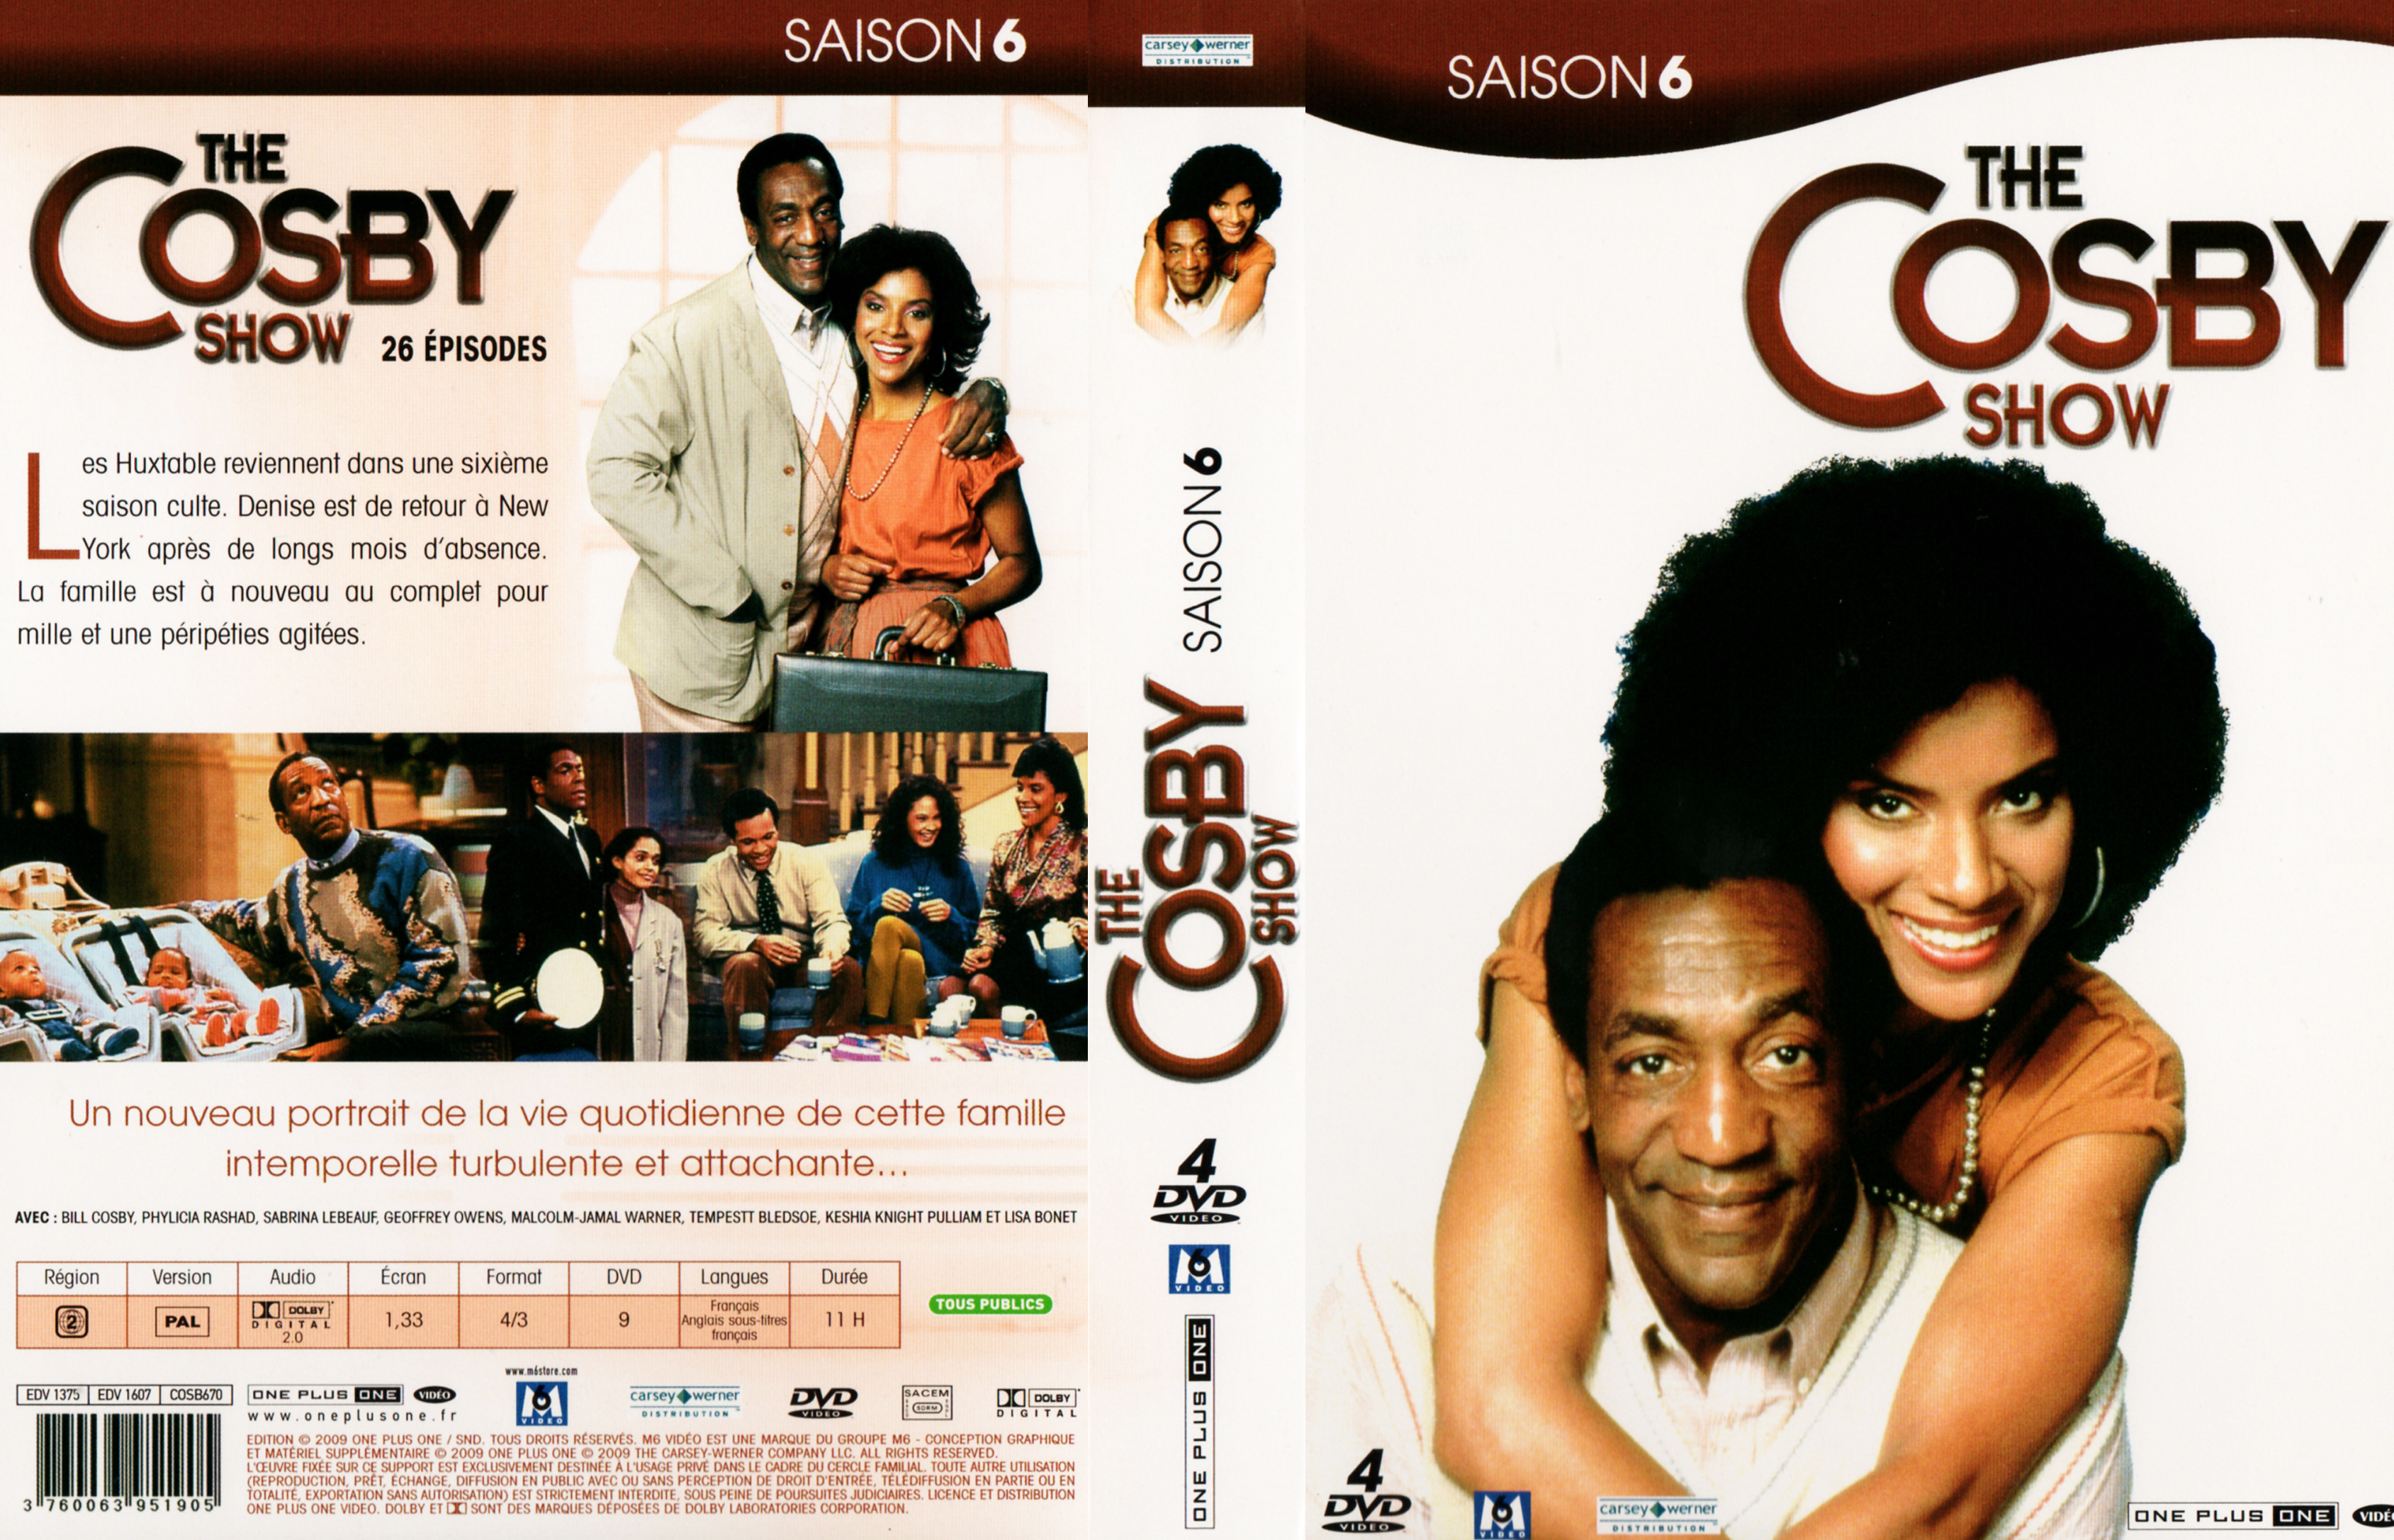 Jaquette DVD The Cosby show Saison 6 COFFRET